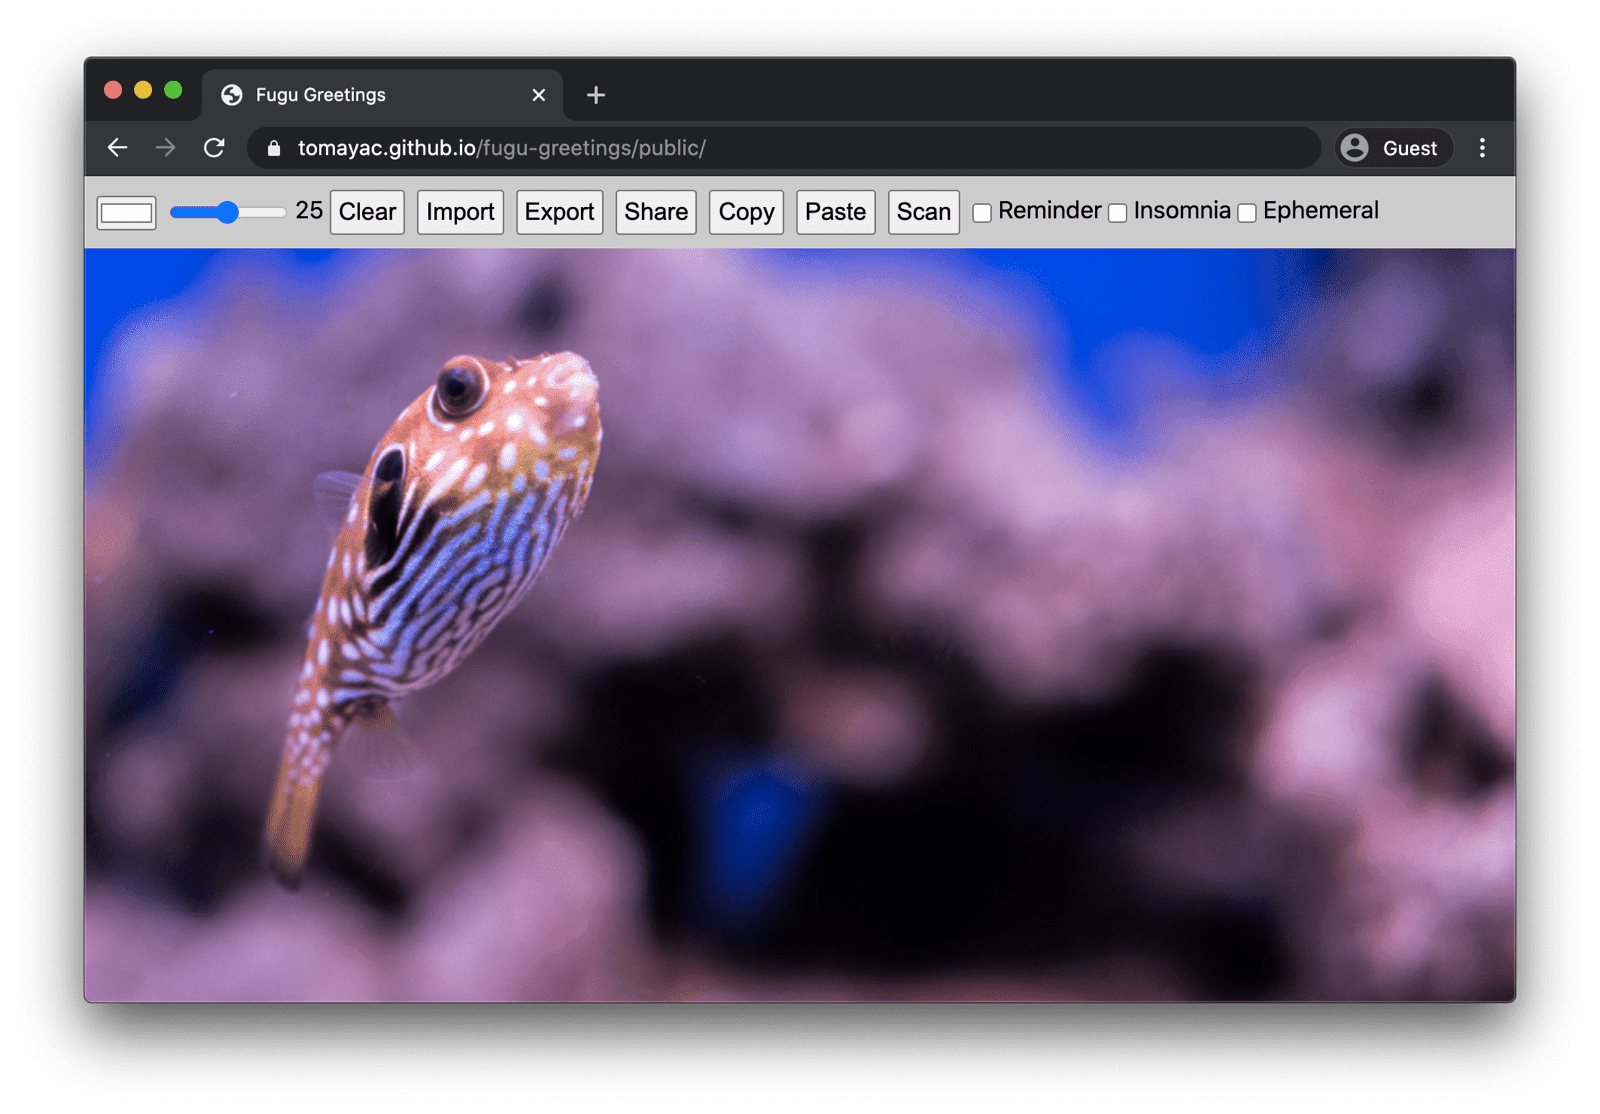 Fugu Greetings در حال اجرا در کروم دسکتاپ است و بسیاری از ویژگی‌های موجود را نشان می‌دهد.